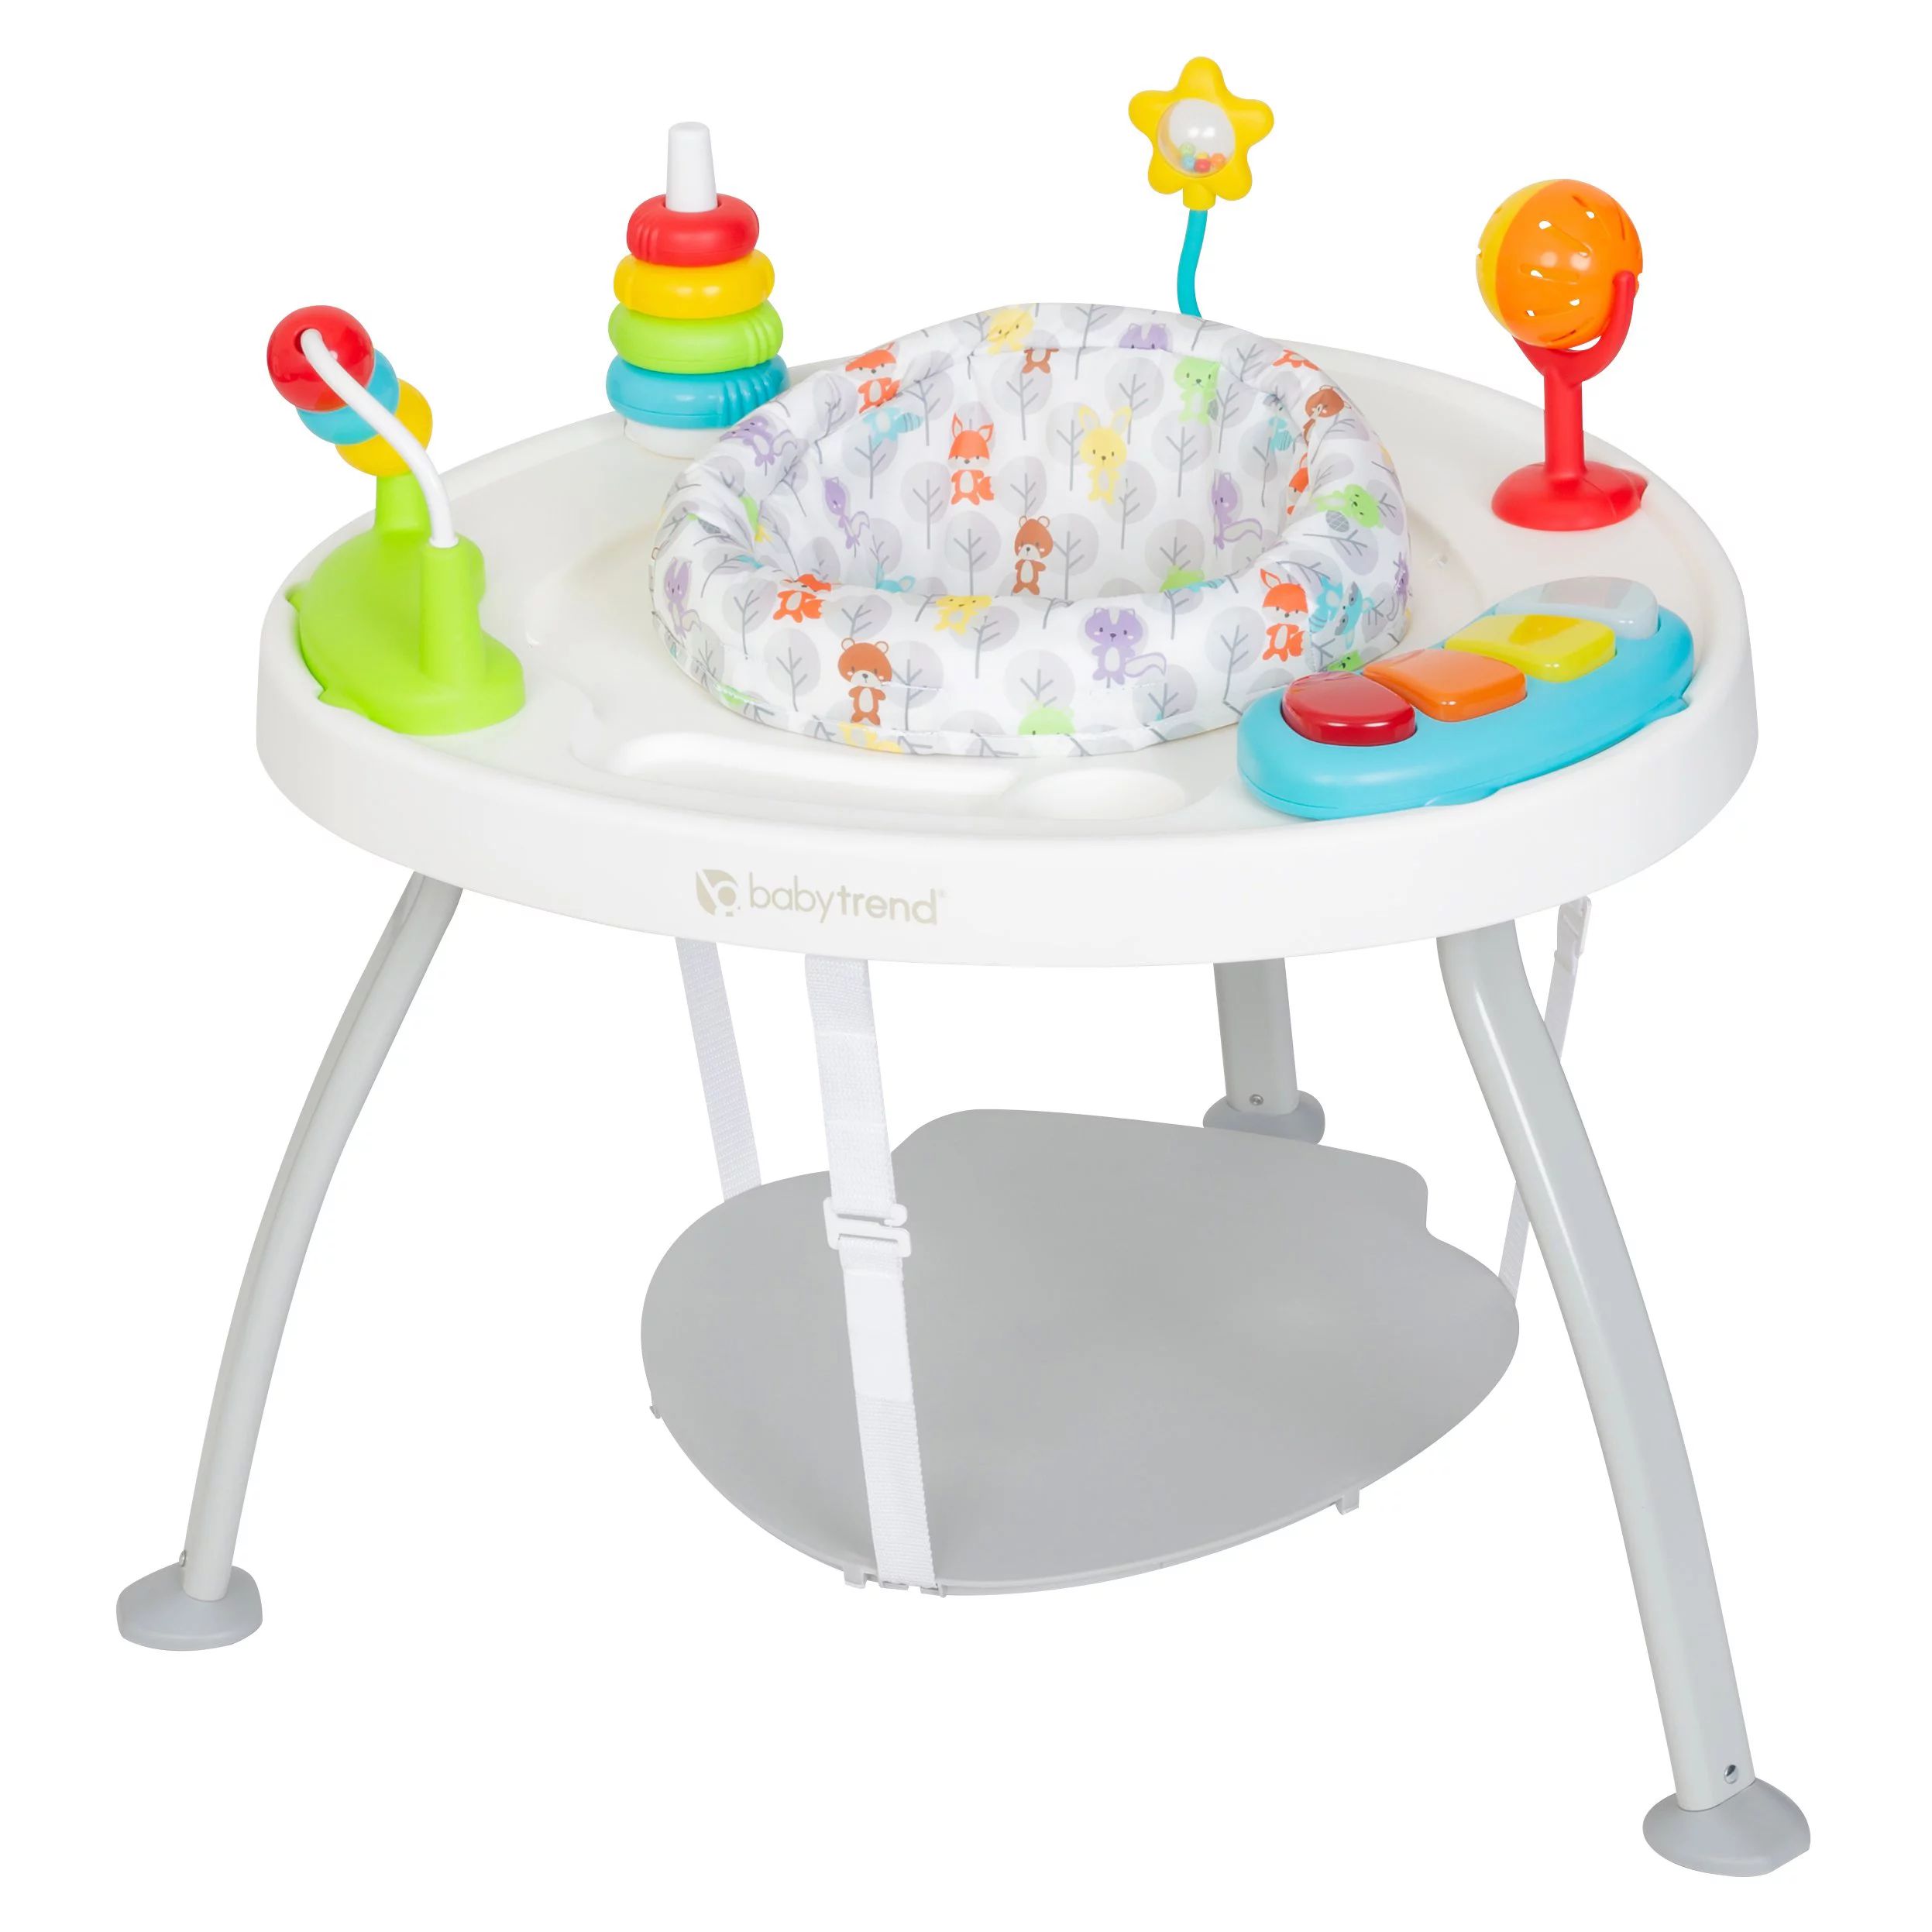 Baby Trend 3-in-1 Bounce N’ Play Activity Center - Walmart.com | Walmart (US)